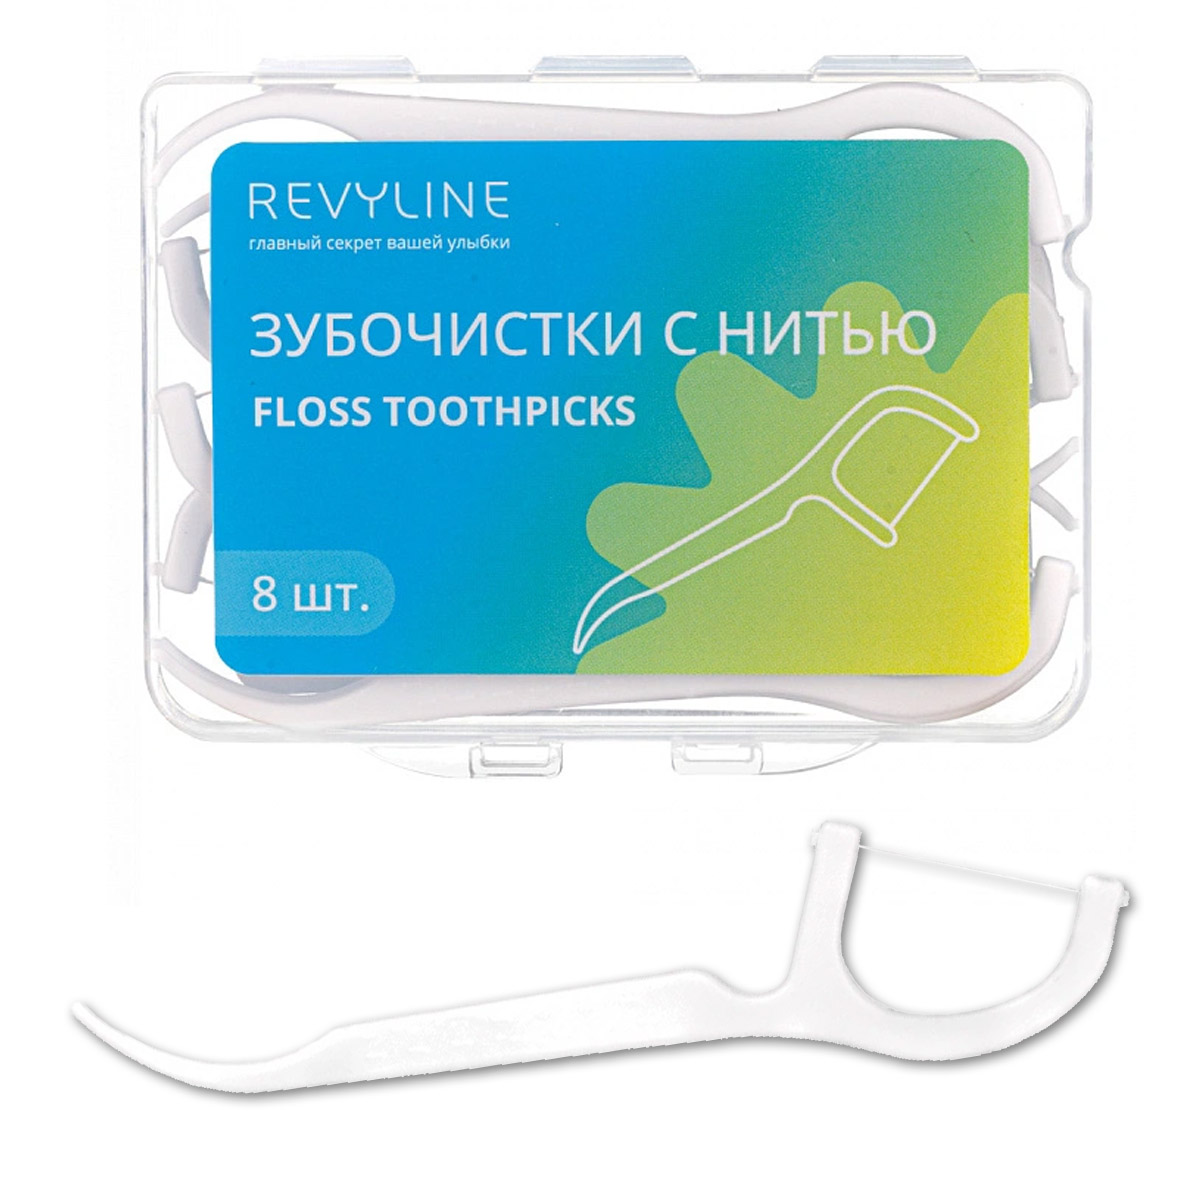 Зубная нить Revyline biorepair ultra flat waxed floss ультраплоская зубная нить без воска для чувствительных зубов